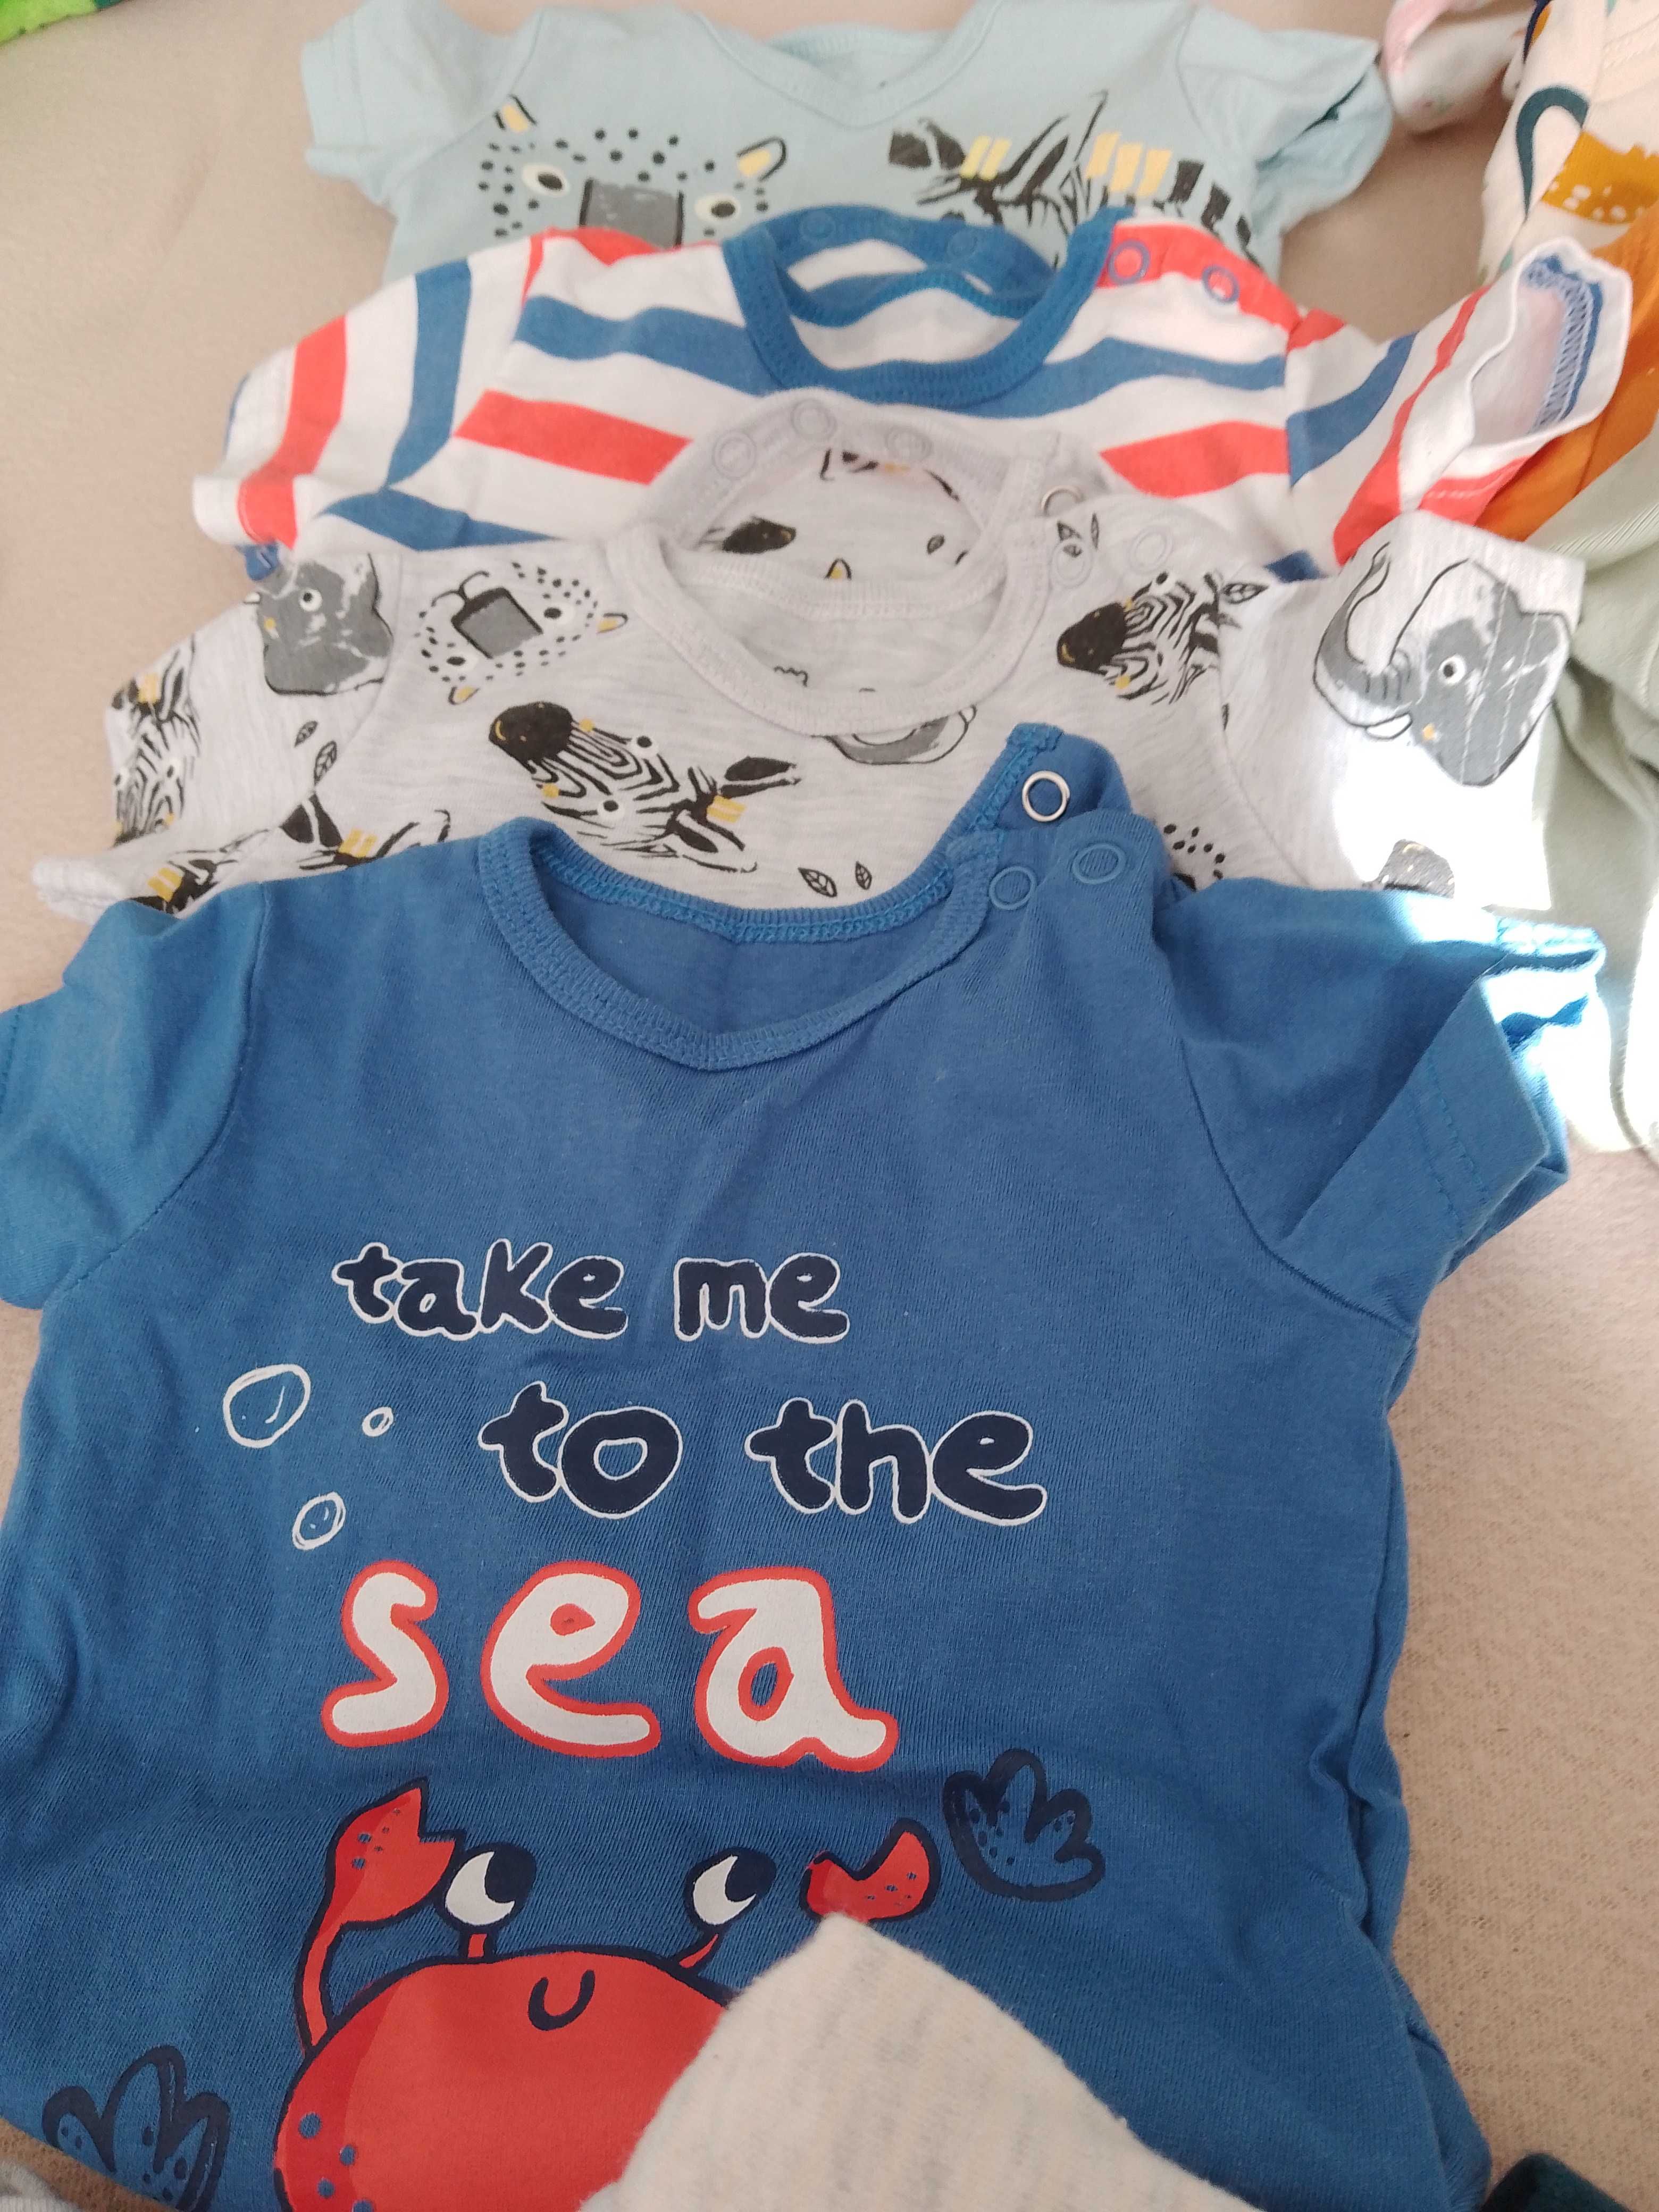 Paczka ubranek niemowlęcych dla chłopca+gratis śpiworek i pieluchy